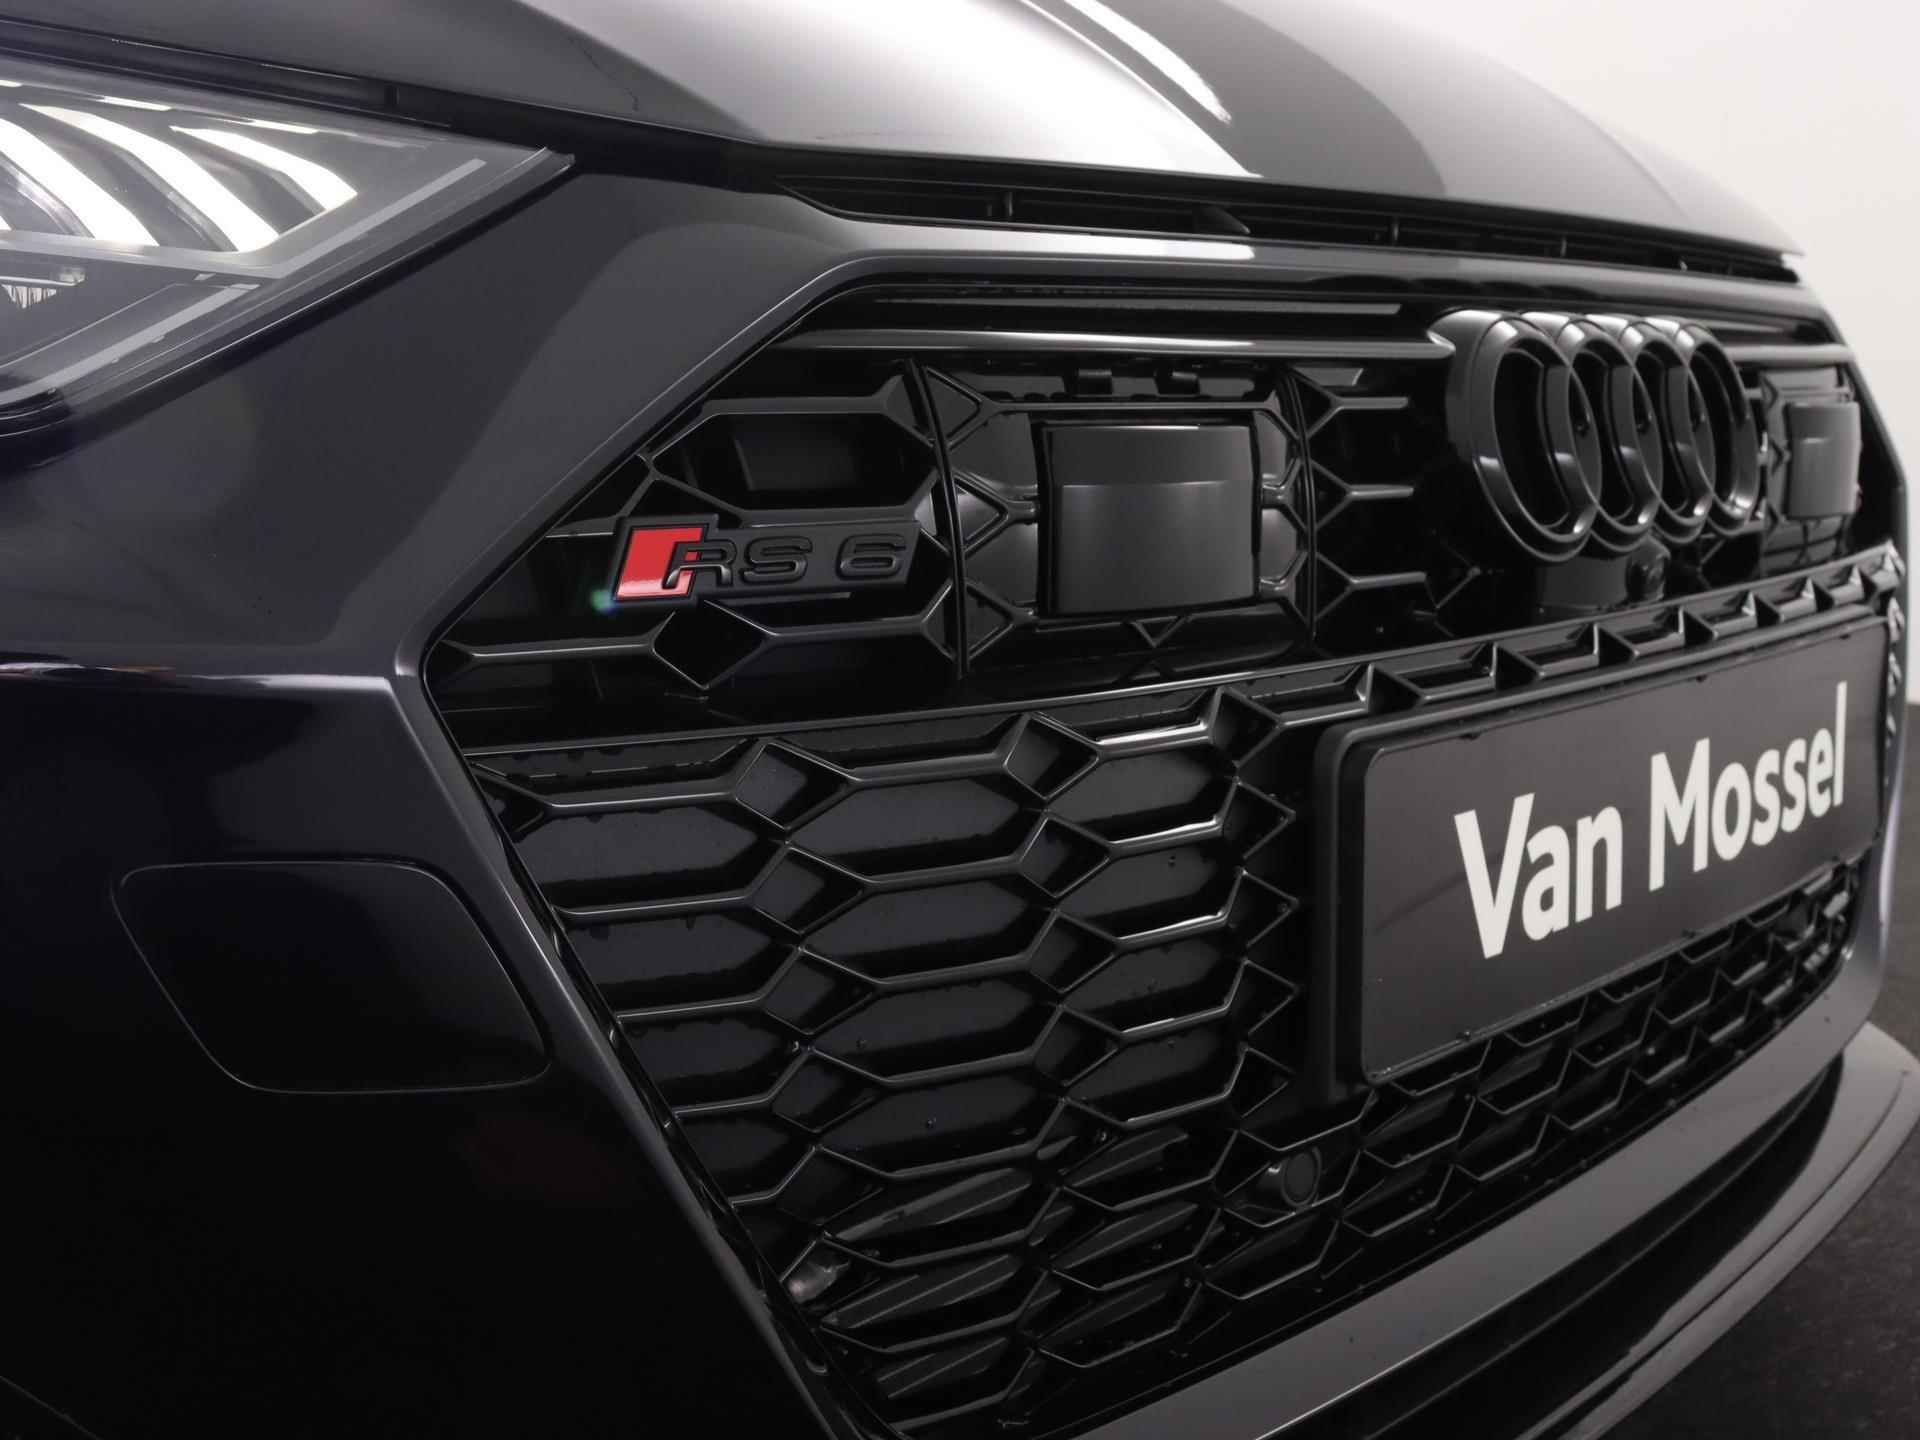 Audi RS 6 Avant TFSI quattro 600 PK | Head-up display | Bang & Olufsen Soundsystem | 22 inch lm velgen | RS Dynamic Pakket Plus | RS Design pakket Rood |Optiekpakket Zwart Plus | Panorama dak | RS Sportuitlaat | Keramische remschijven Rood | RS Sportonderstel Plus | Servosluiting deuren | Nu € 36.129,- ACTIEKORTING! | DIRECT LEVERBAAR! | - 21/35